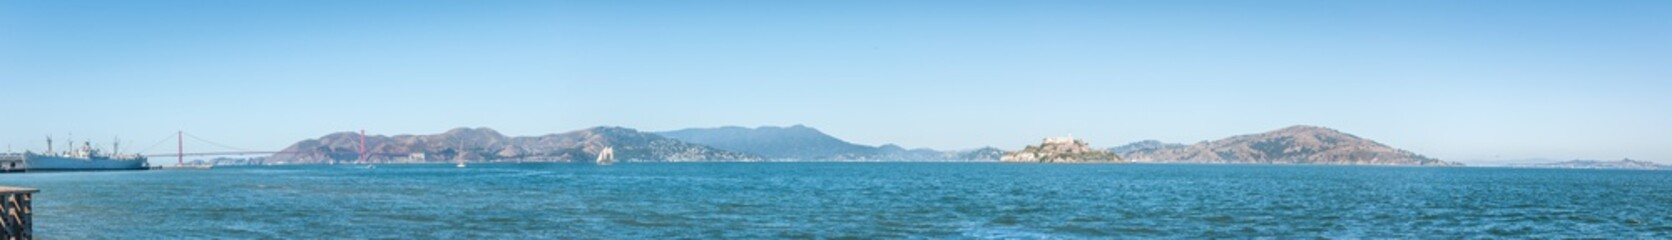 Panorama de la baie de San Francisco